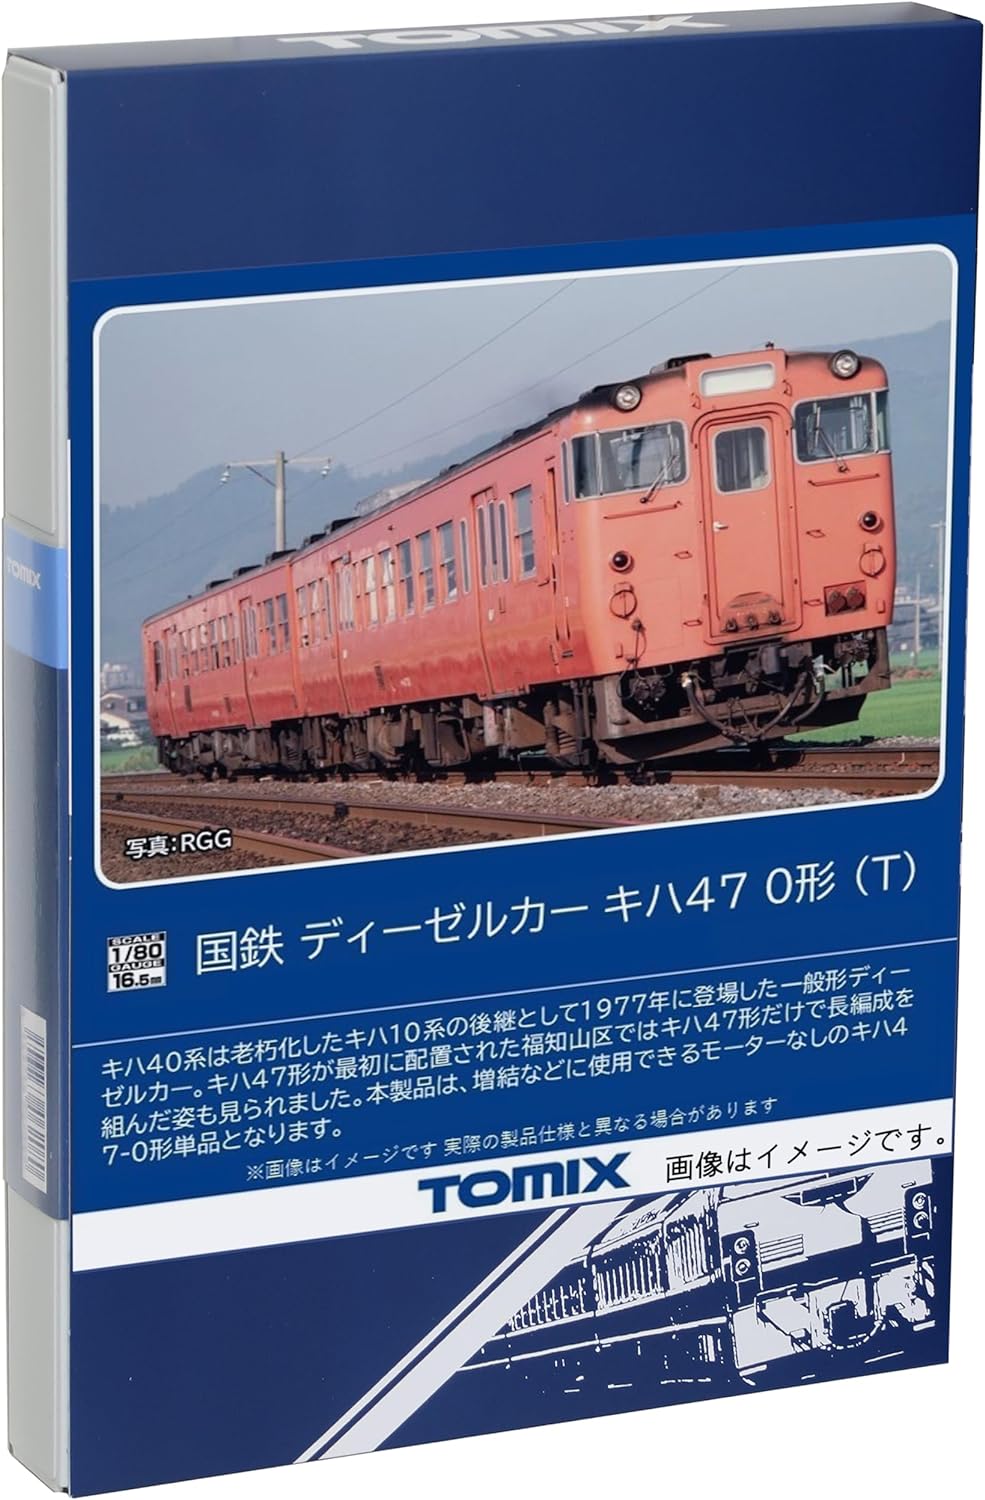 TOMIX HO-433 HO Gauge JNR Kiha 47 Type 1000 Railway Model Diesel Car - BanzaiHobby